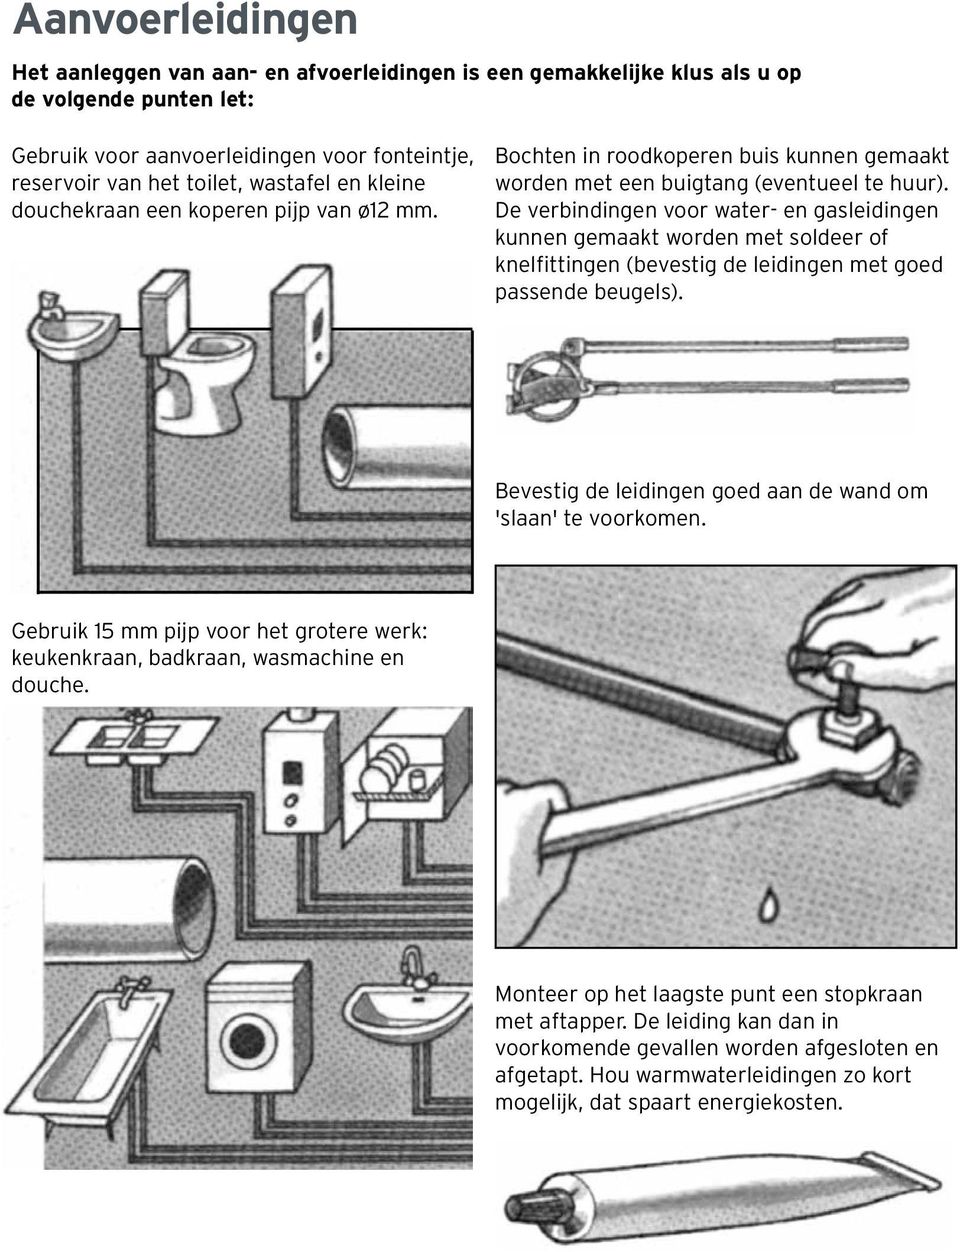 De verbindingen voor water- en gasleidingen kunnen gemaakt worden met soldeer of knelfittingen (bevestig de leidingen met goed passende beugels).